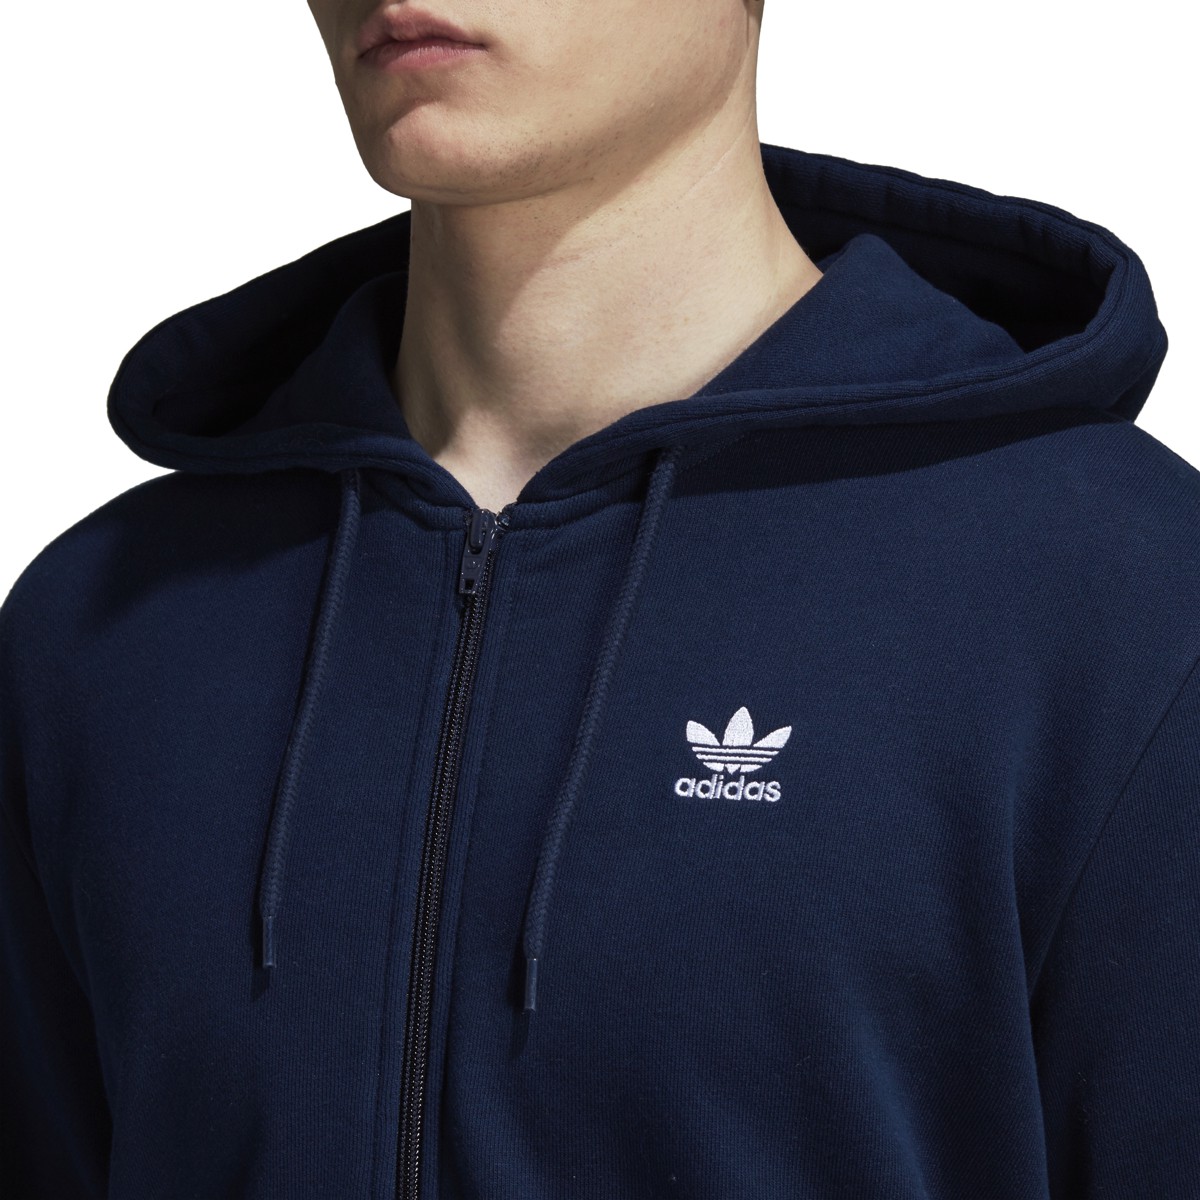 Adidas Men's Originals Trefoil Full Zip Fleece Hoodie Collegiate Navy DS9896 | eBay